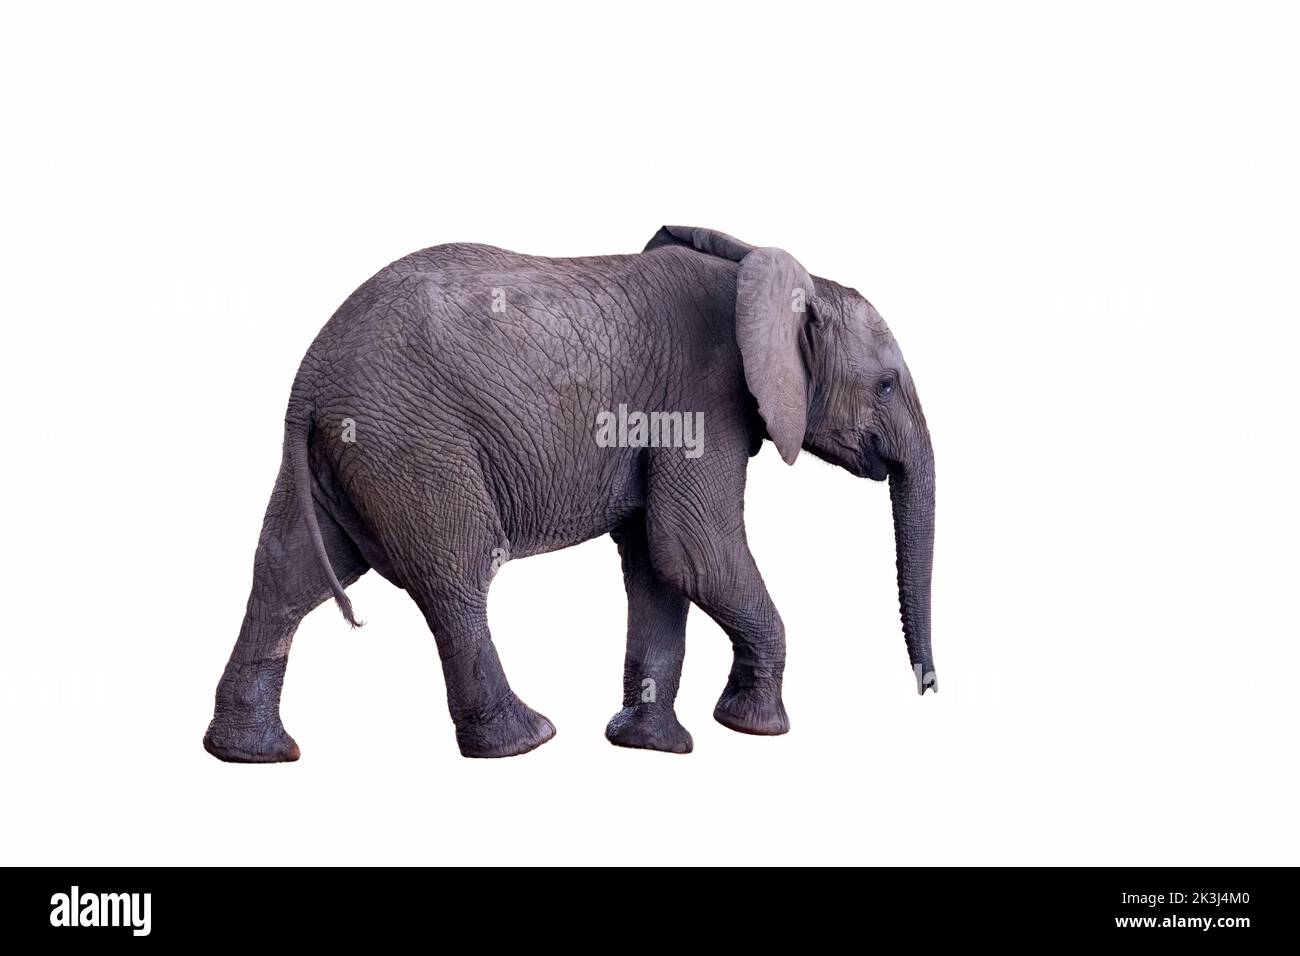 Bambino elefante africano, loxodonta africana. Ritagliata e isolata su sfondo bianco. Vista laterale di un elefante a piedi. Adatto per compositi. Foto Stock